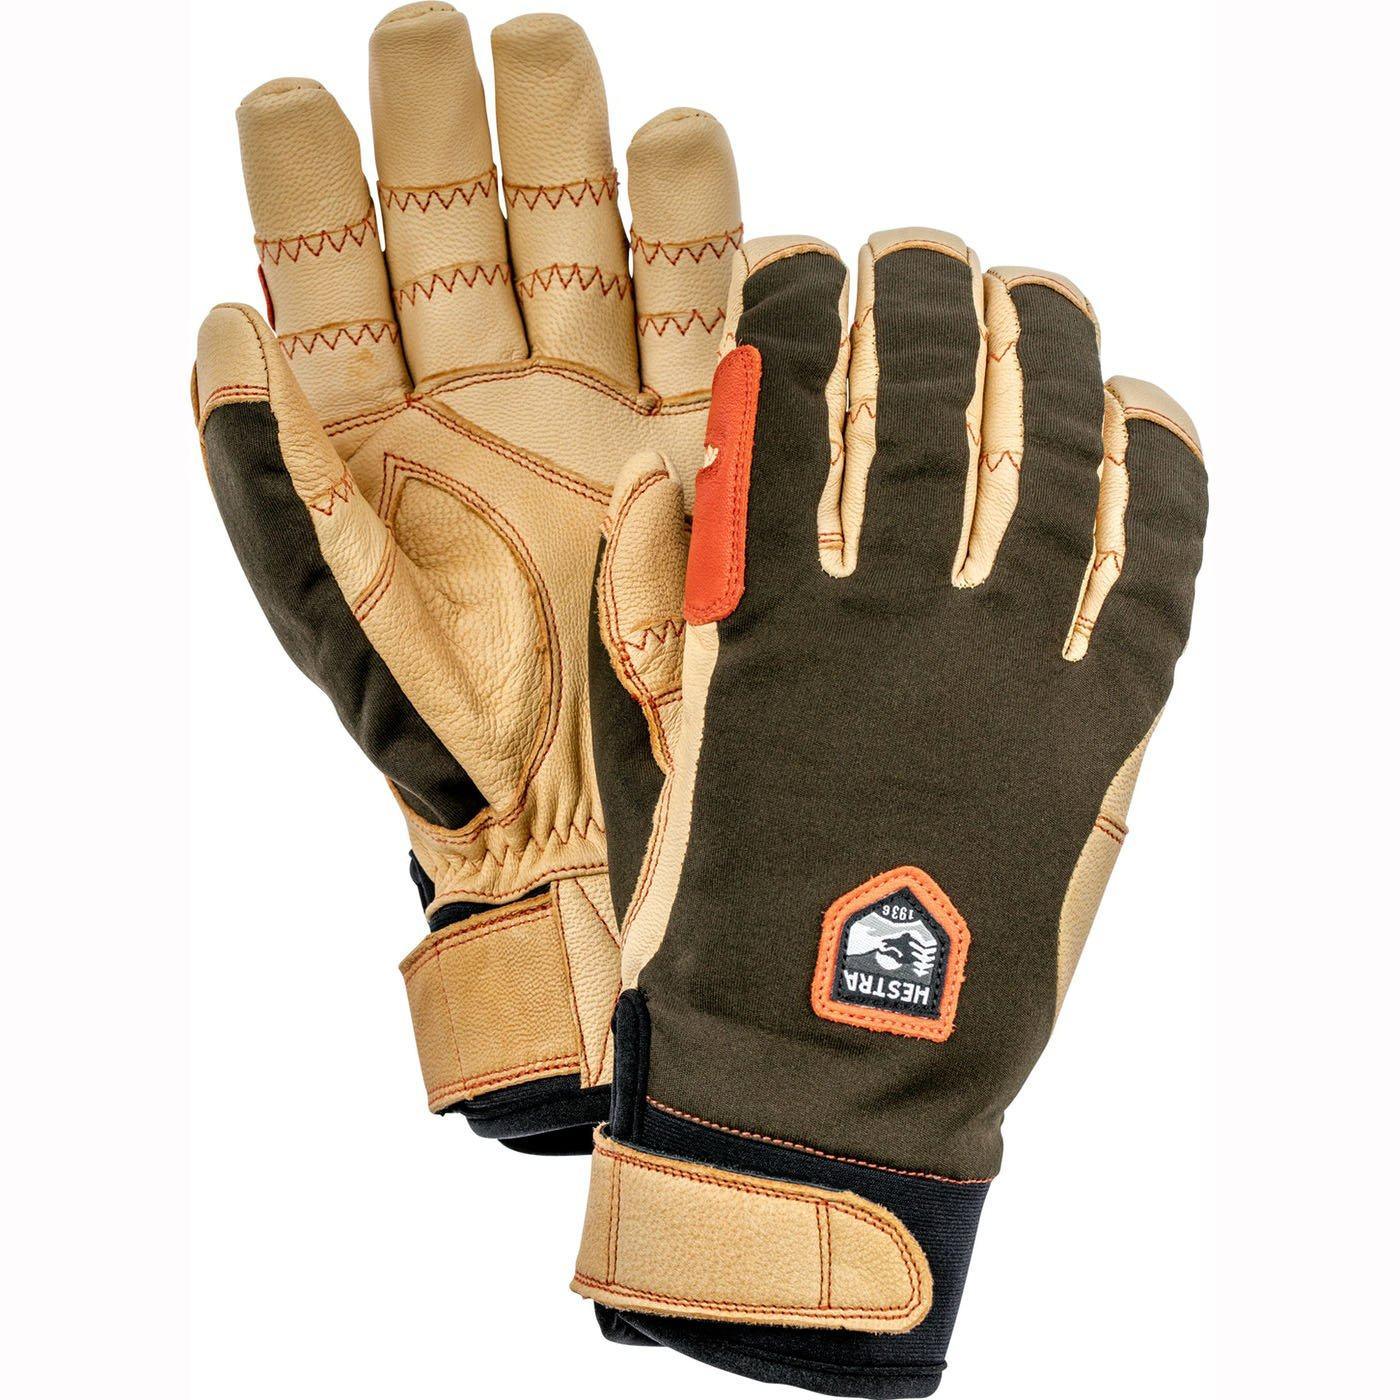 Hestra Ergo Grip Active (Handskar) från Hestra. 6 | TacNGear - Utrustning för polis och militär och outdoor.